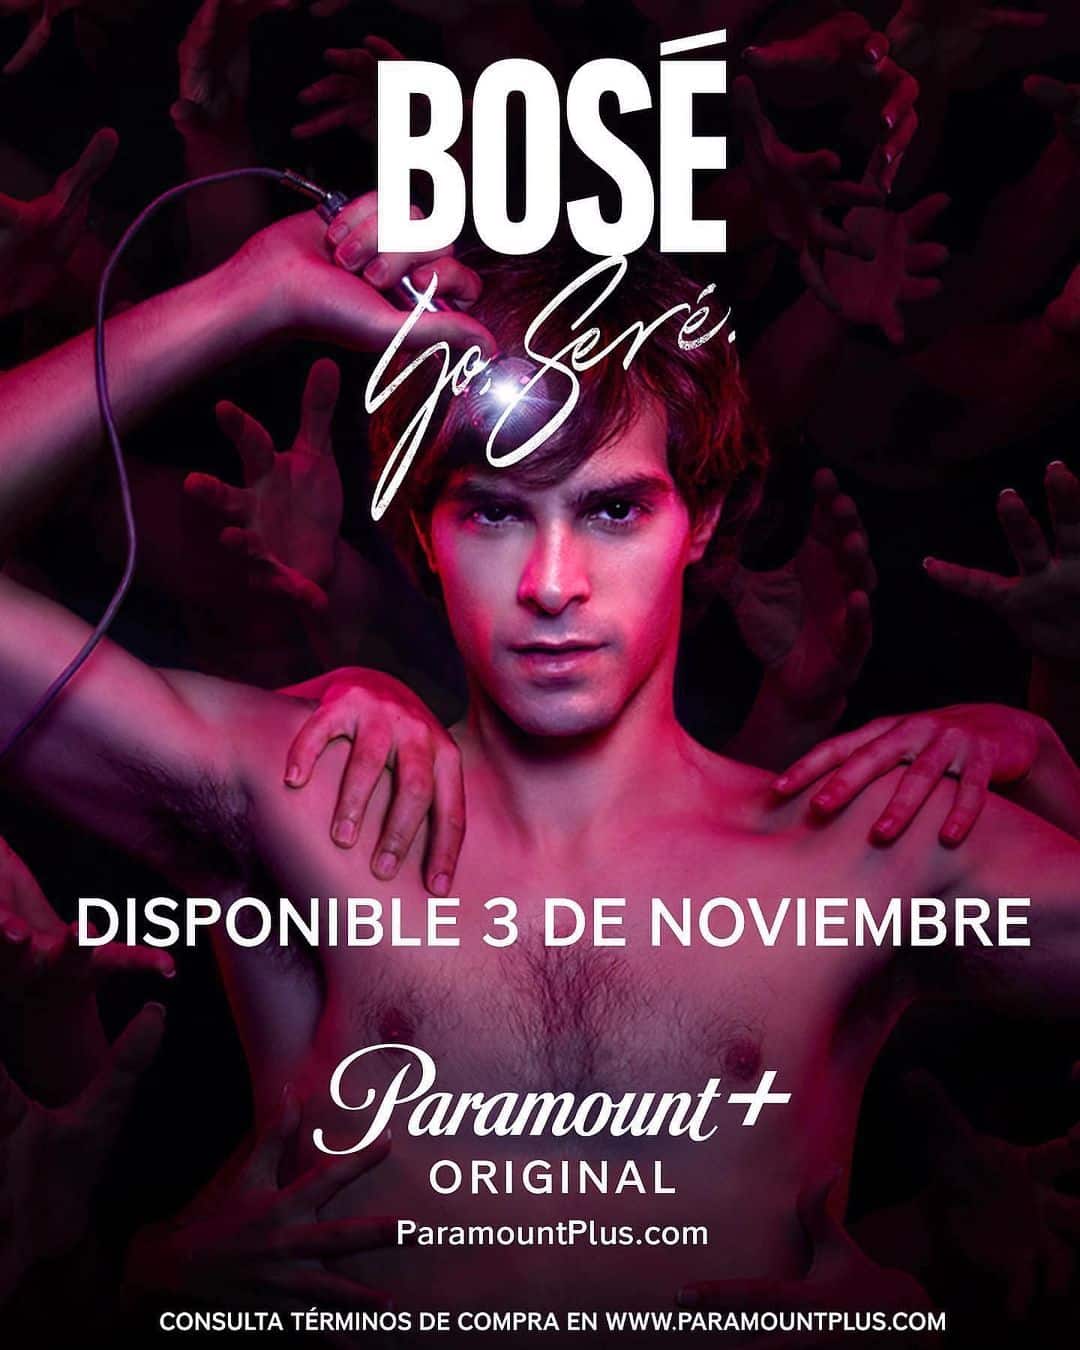 Il poster della serie “Bosé”, disponibile su Paramount+ dal 3 novembre